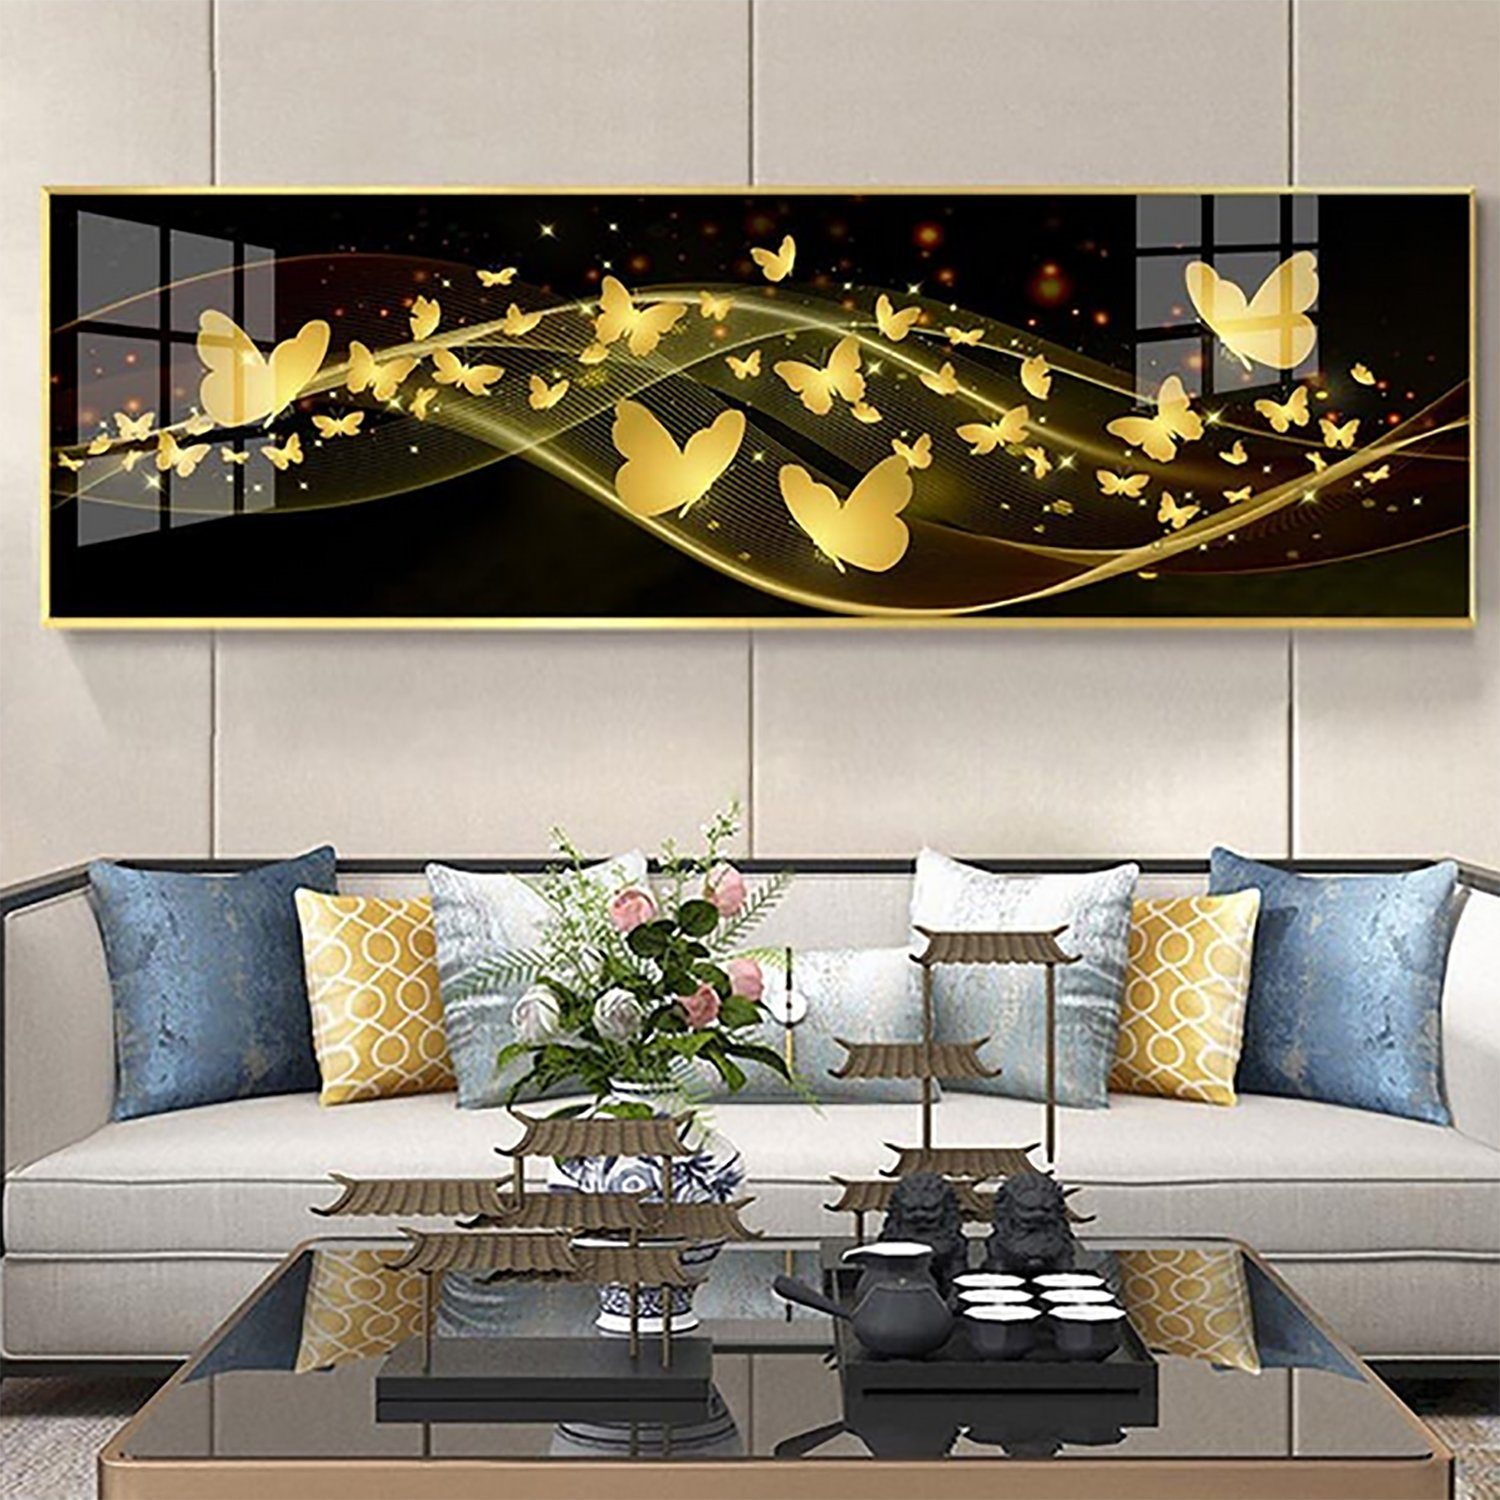 TPFLiving Kunstdruck (OHNE RAHMEN) Poster - Leinwand - Wandbild, Außergewöhnliche Blumenmotive in Breitbild-Format - (Leinwand Wohnzimmer, Leinwand Bilder, Kunstdruck), Farben: Gold, beige, rot, blau, weiß und rosa - Größe 20x60cm